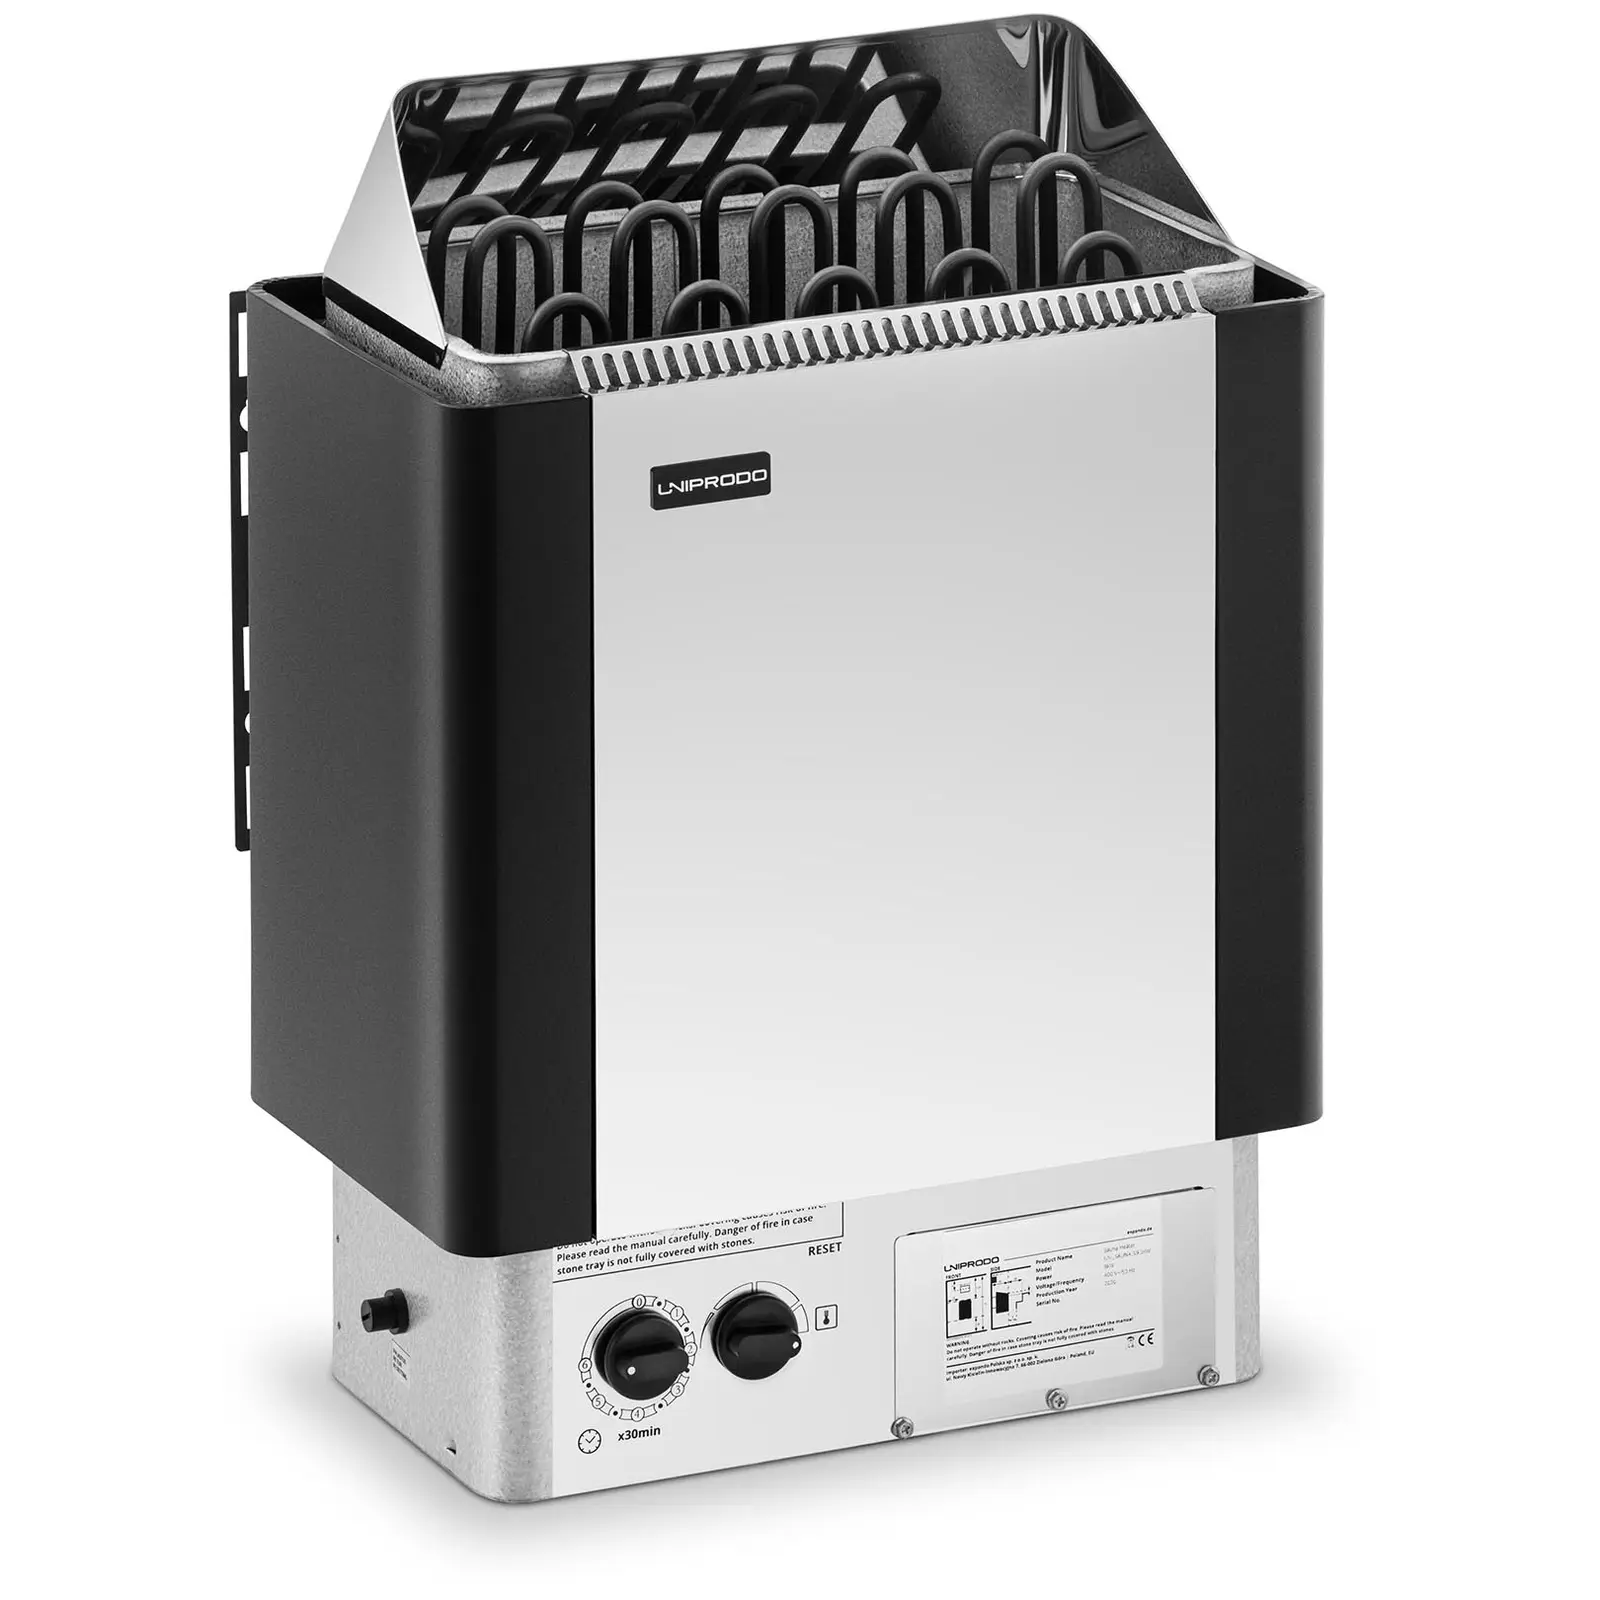 Saunaofen - 9 kW - 30 bis 110 °C - inkl. Steuerung